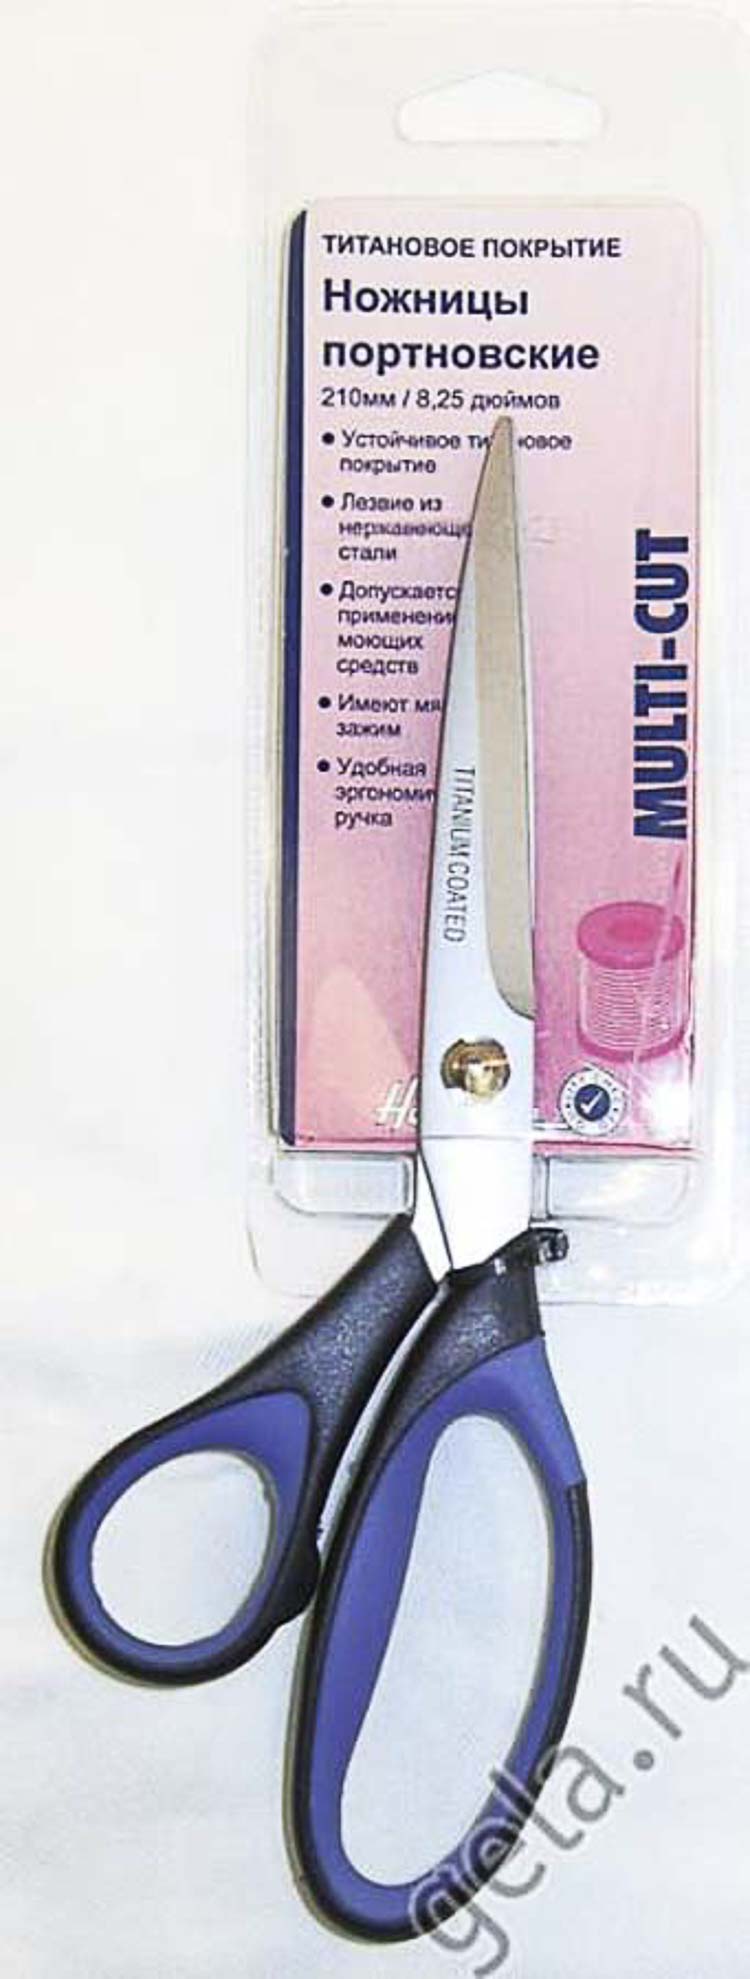 Ножницы "Hemline" 328 для шитья и хобби с титановым покрытием, 21 см